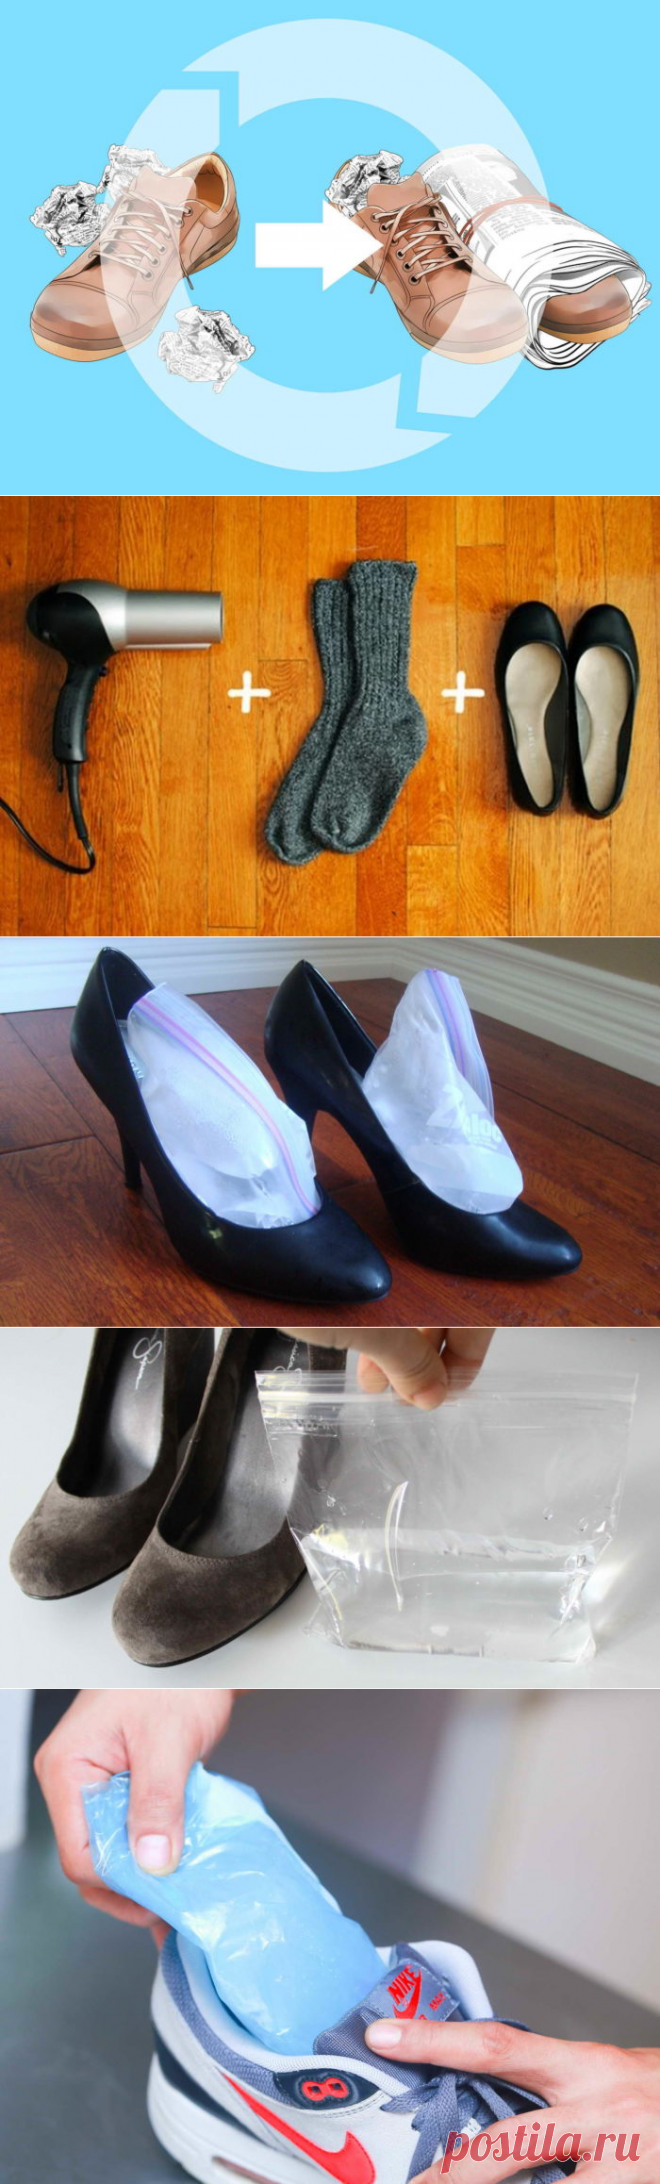 Как растянуть замшевую обувь ? в домашних условиях: 16 методов как быстро разносить туфли из замши, которые жмут в пальцах, в ширину, длину и в подъеме на размер больше